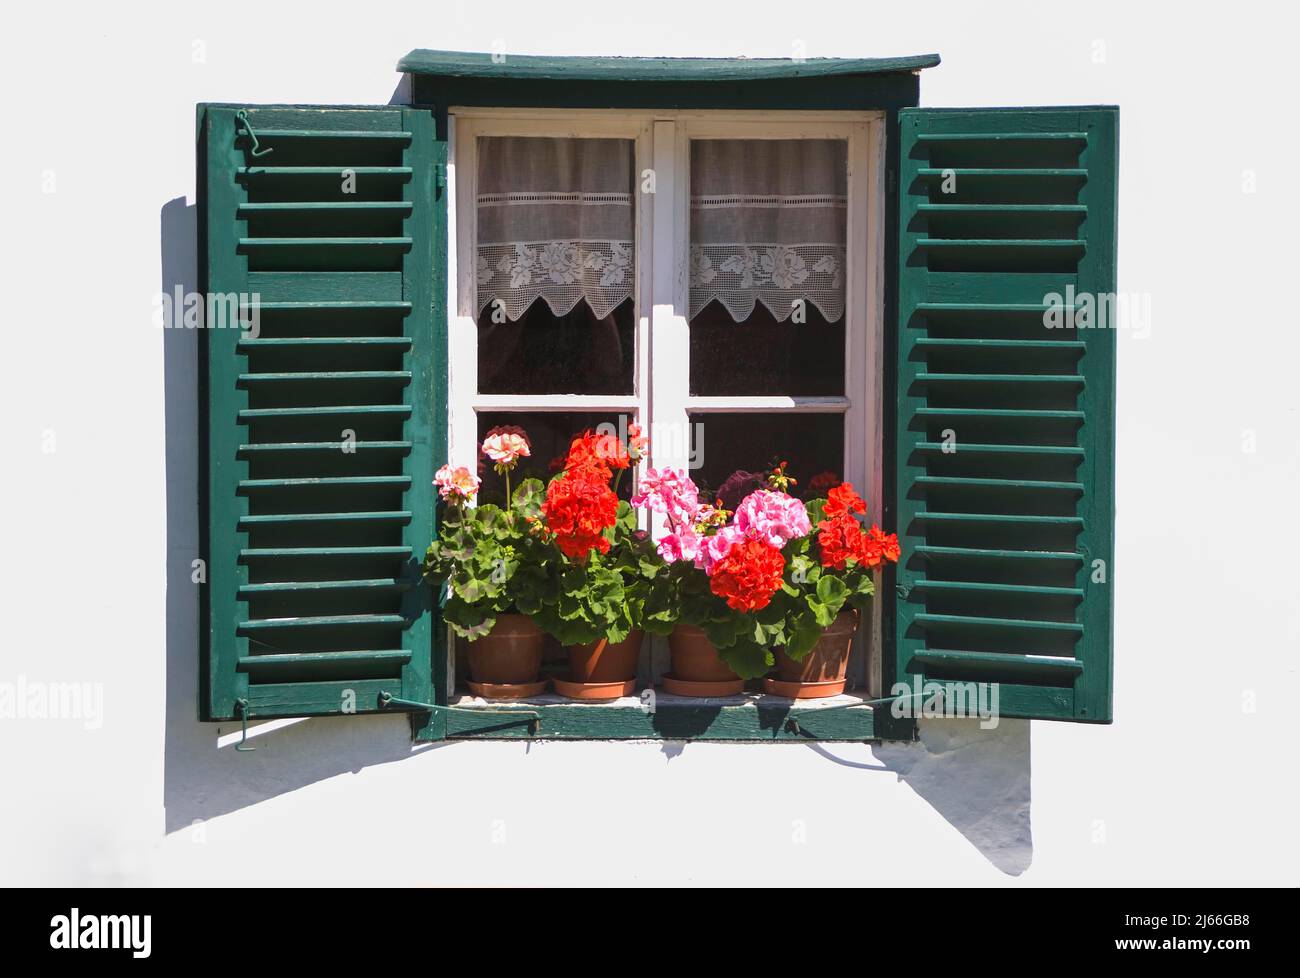 Blumenfenster mit Belagonien und gruenen Fosterlaeden, Bauernhaus, Mattsee, Flachgau, Land Salzbourg, Oesterreich Banque D'Images